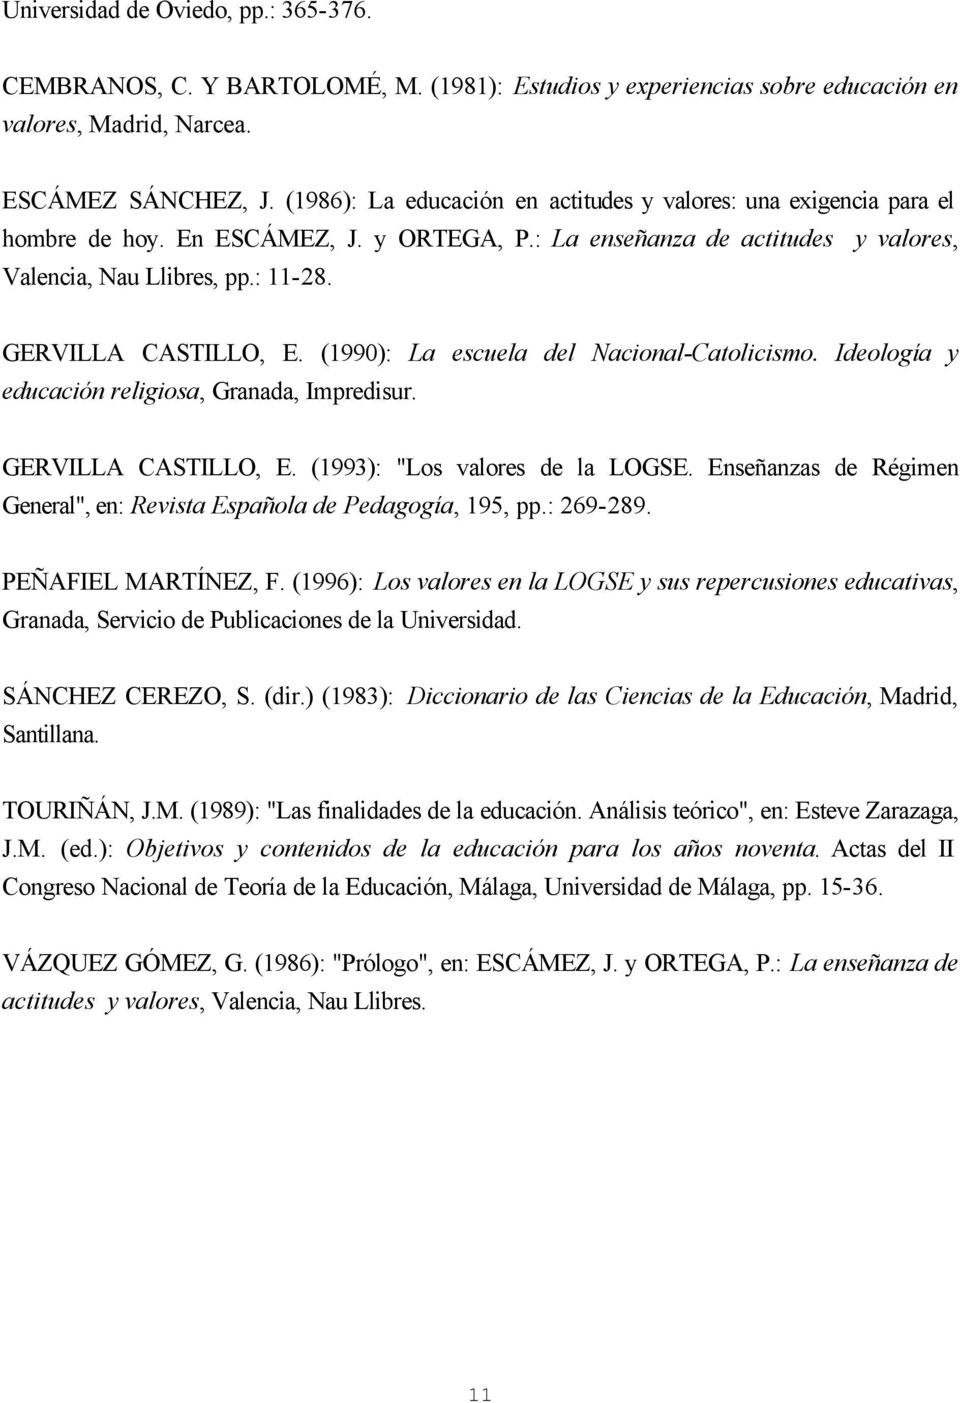 GERVILLA CASTILLO, E. (1990): La escuela del Nacional-Catolicismo. Ideología y educación religiosa, Granada, Impredisur. GERVILLA CASTILLO, E. (1993): "Los valores de la LOGSE.